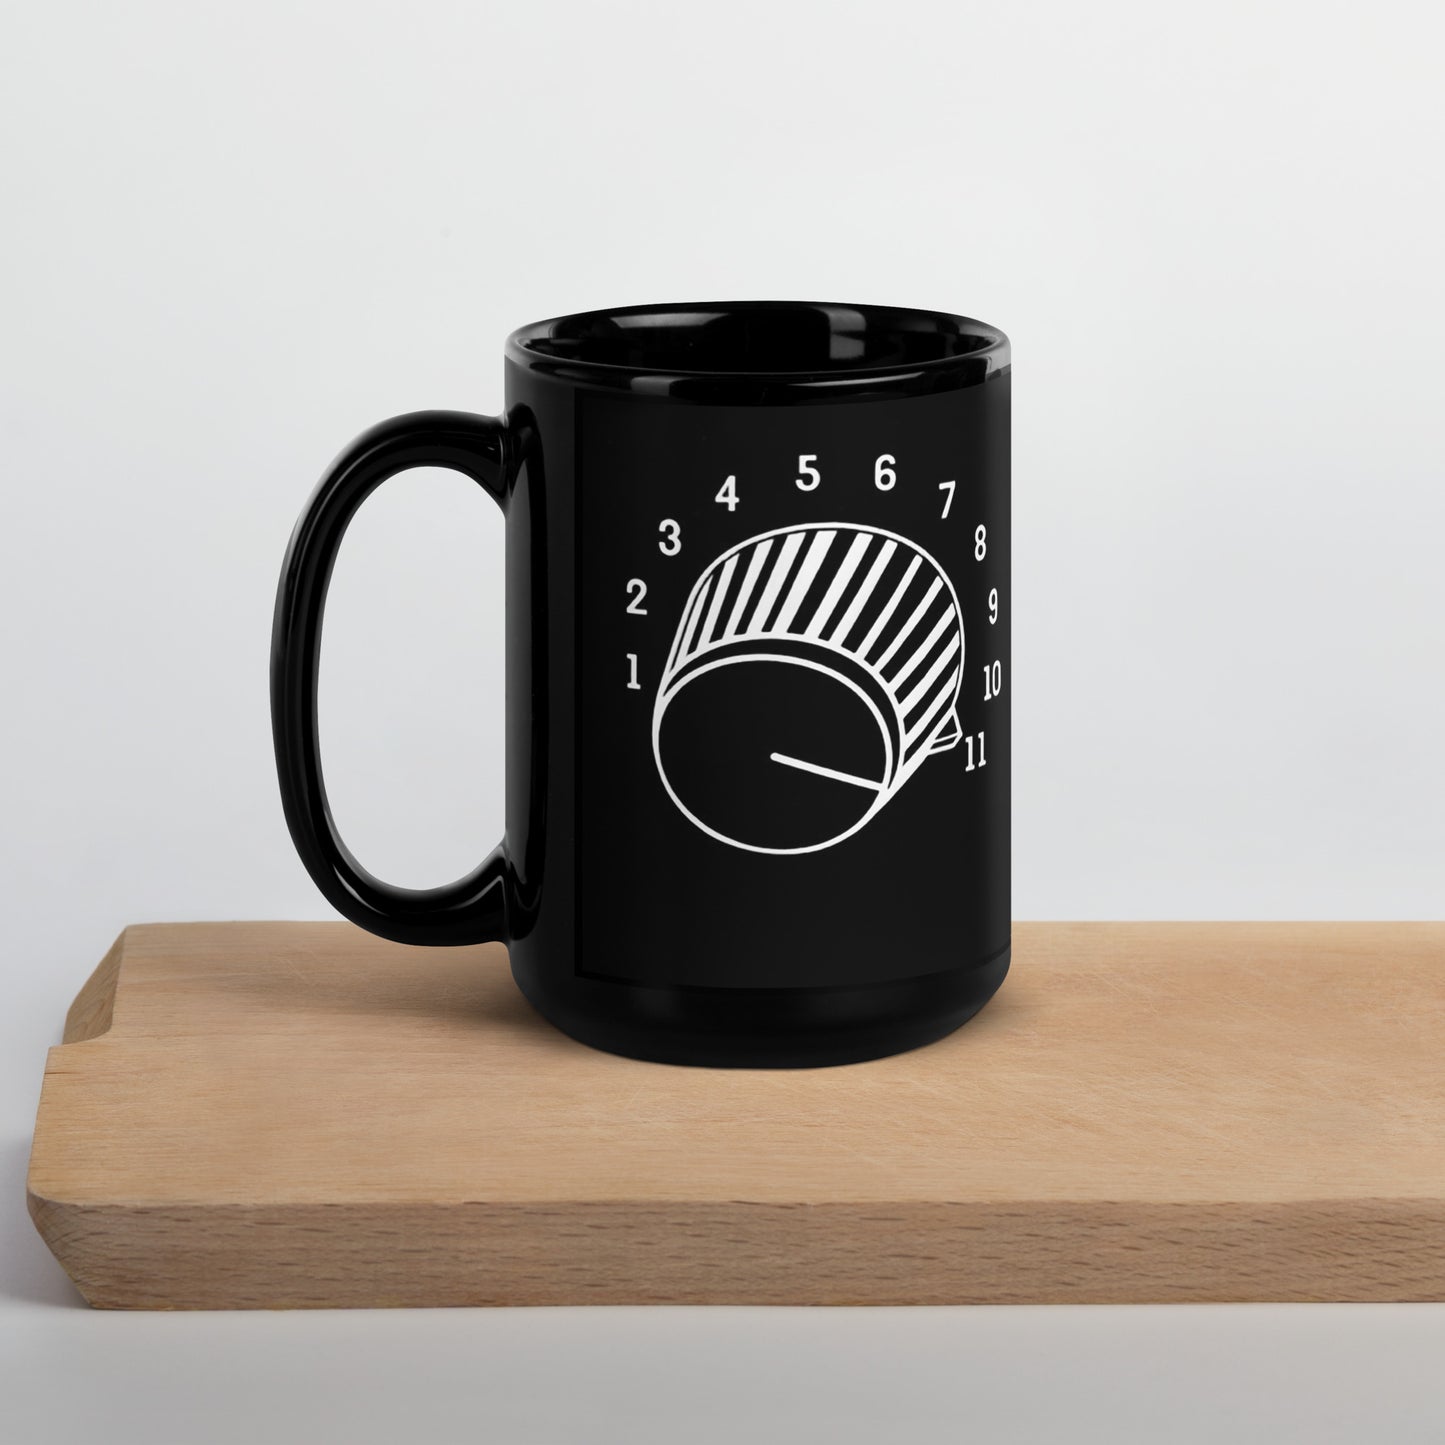 "This Goes To 11" Coffee Mug - Black